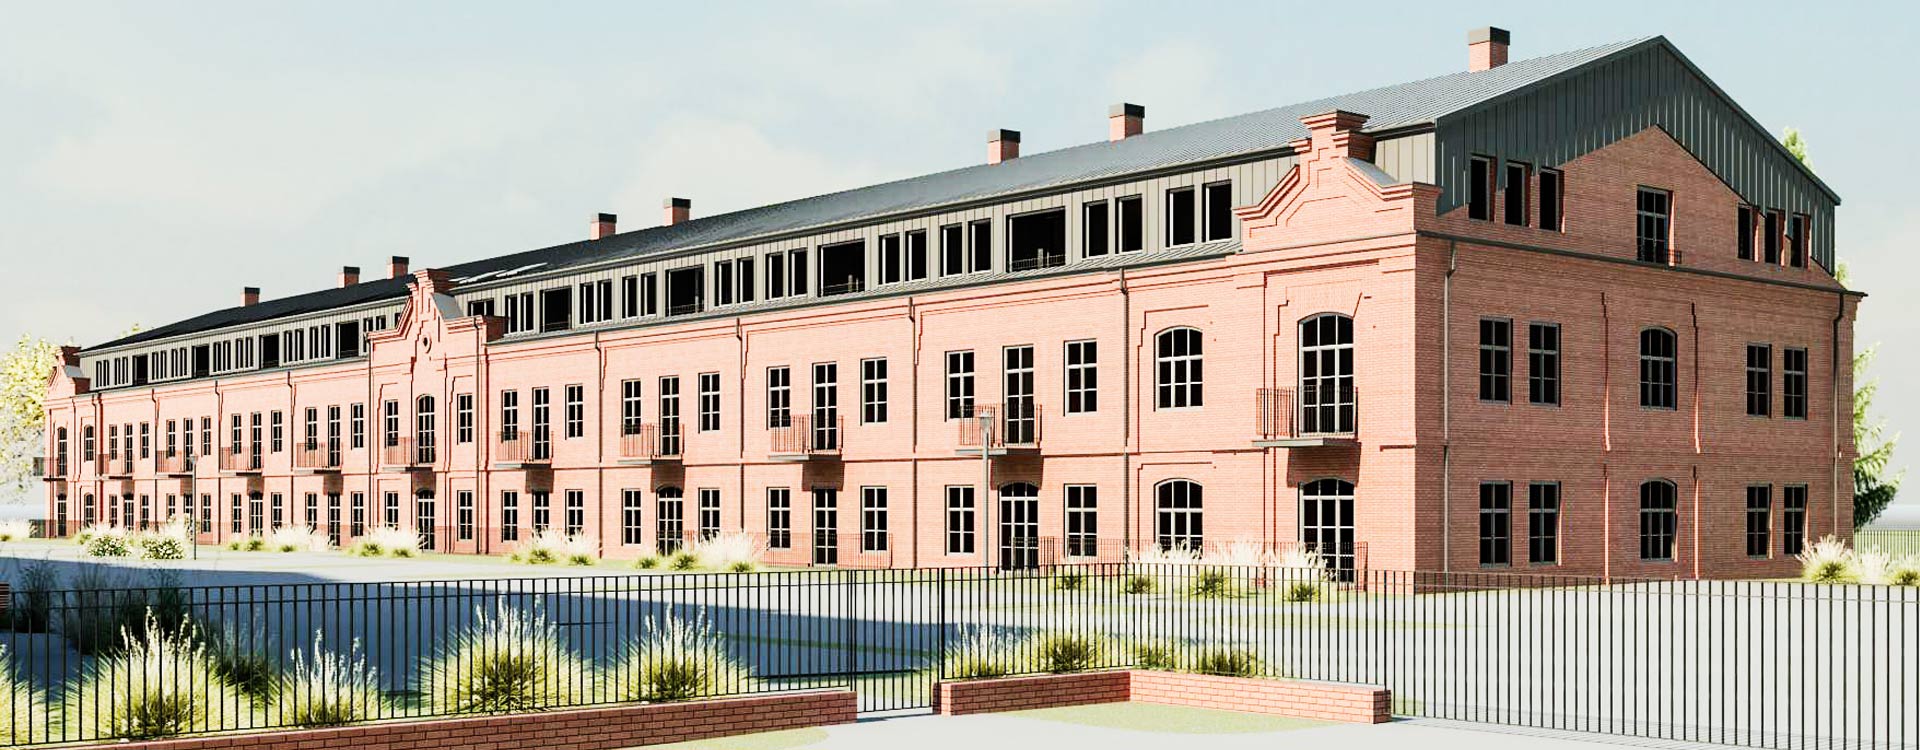 Rozmus Nieruchomości - biuro nieruchomości Zamość, oferty sprzedaży i wynajmu domów, mieszkań, działek i lokali użytkowych w województwie lubelskim